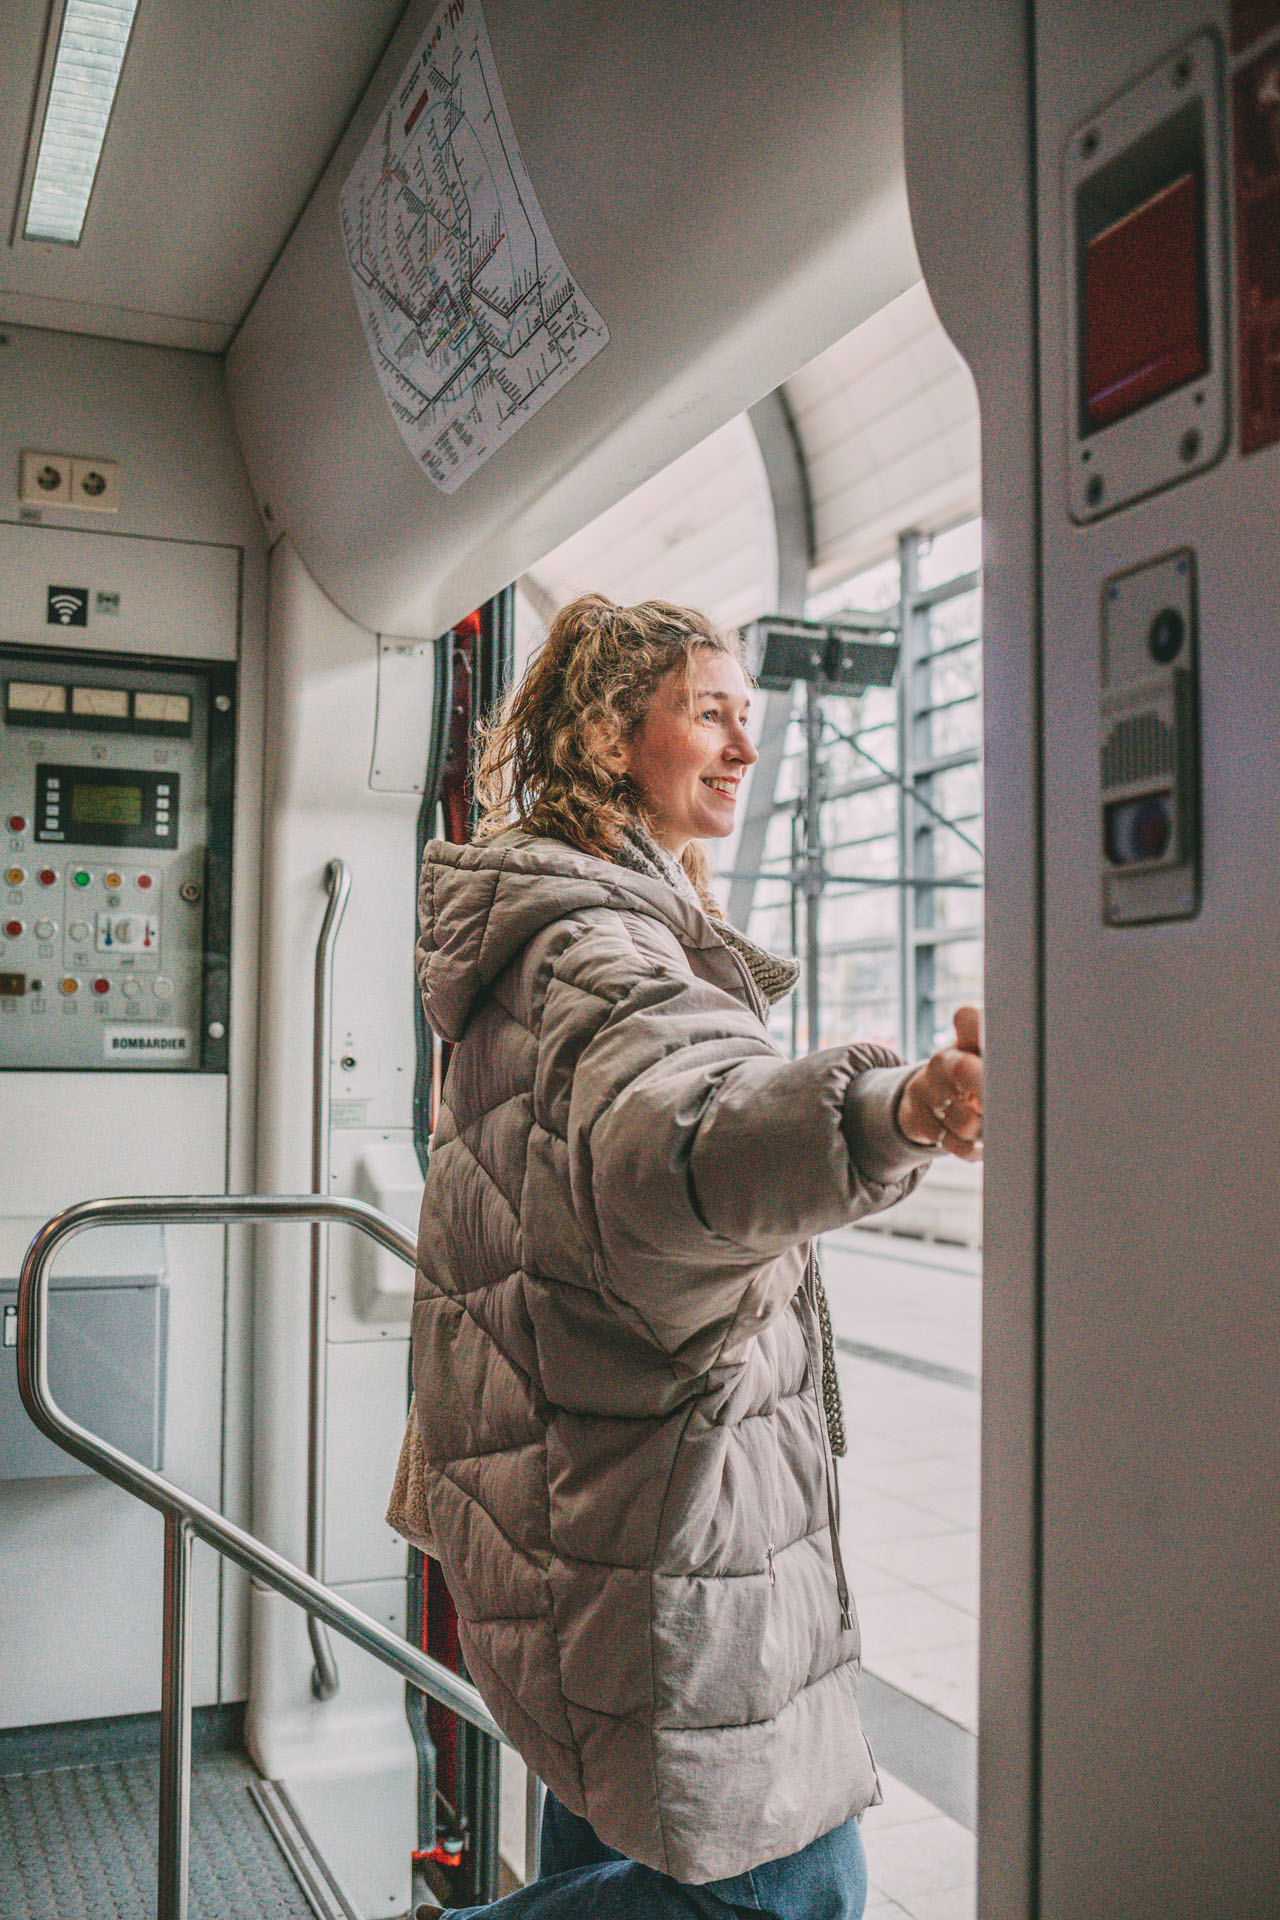 Mit der Bahn an die Ostsee: Mona steigt aus dem Zug aus